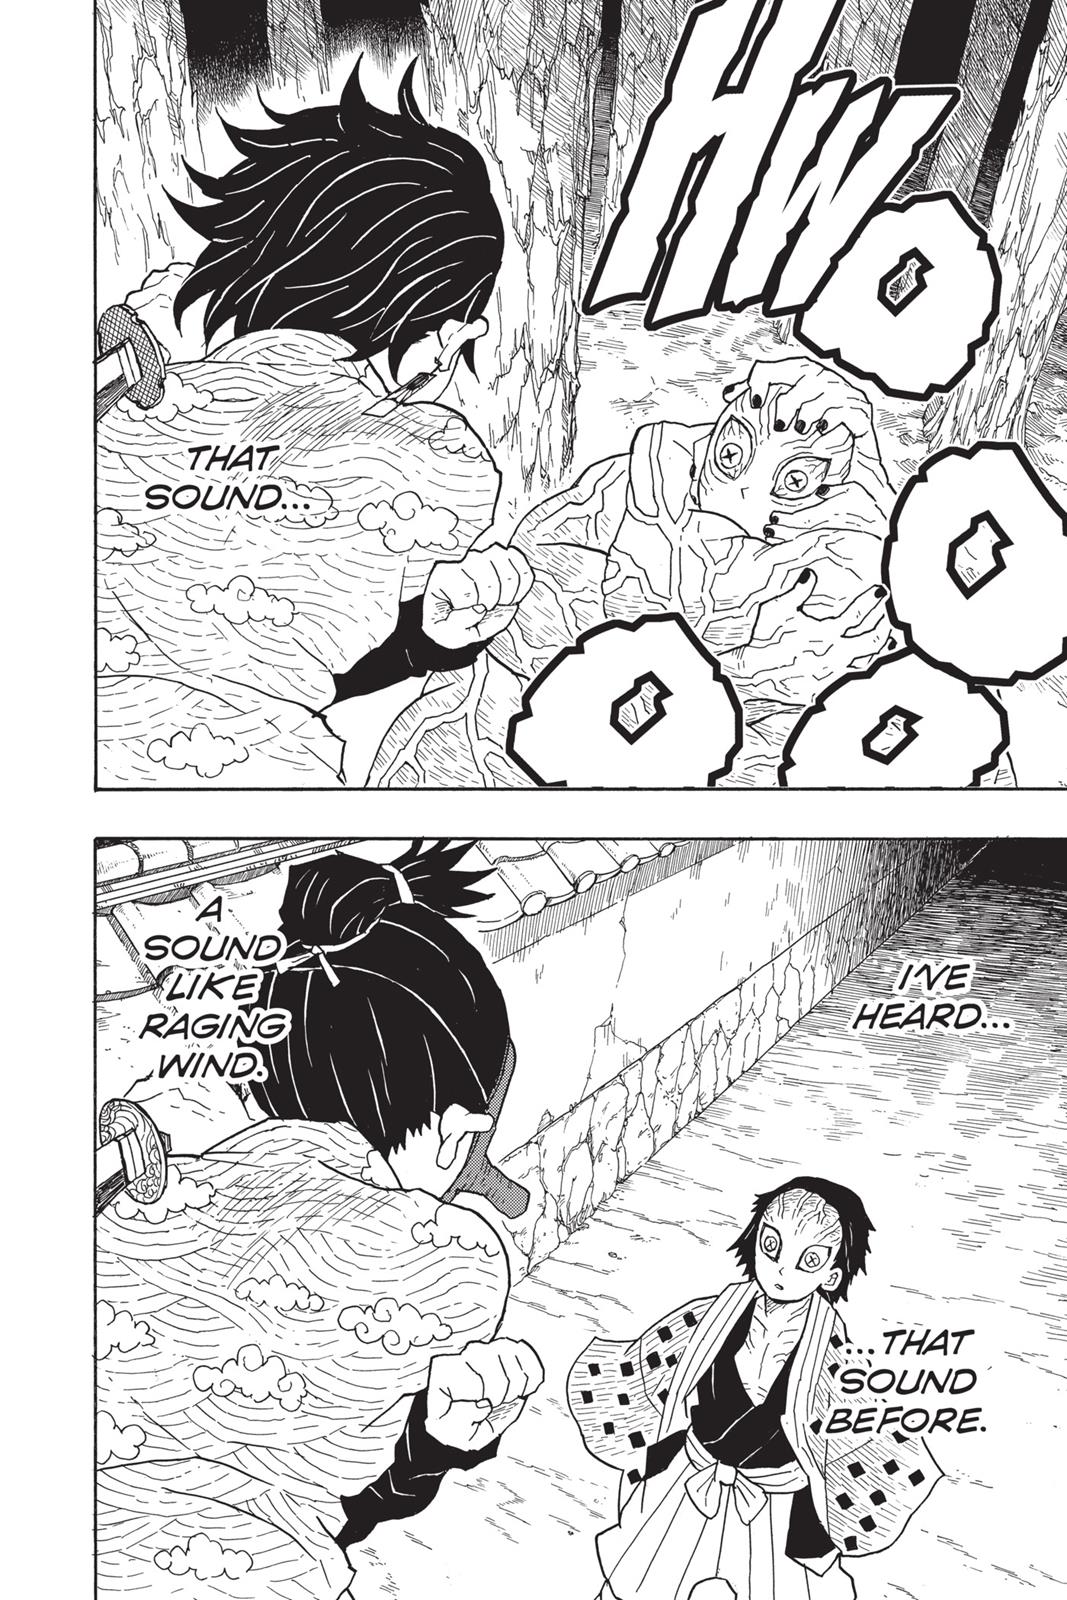 Demon Slayer Manga Manga Chapter - 8 - image 6